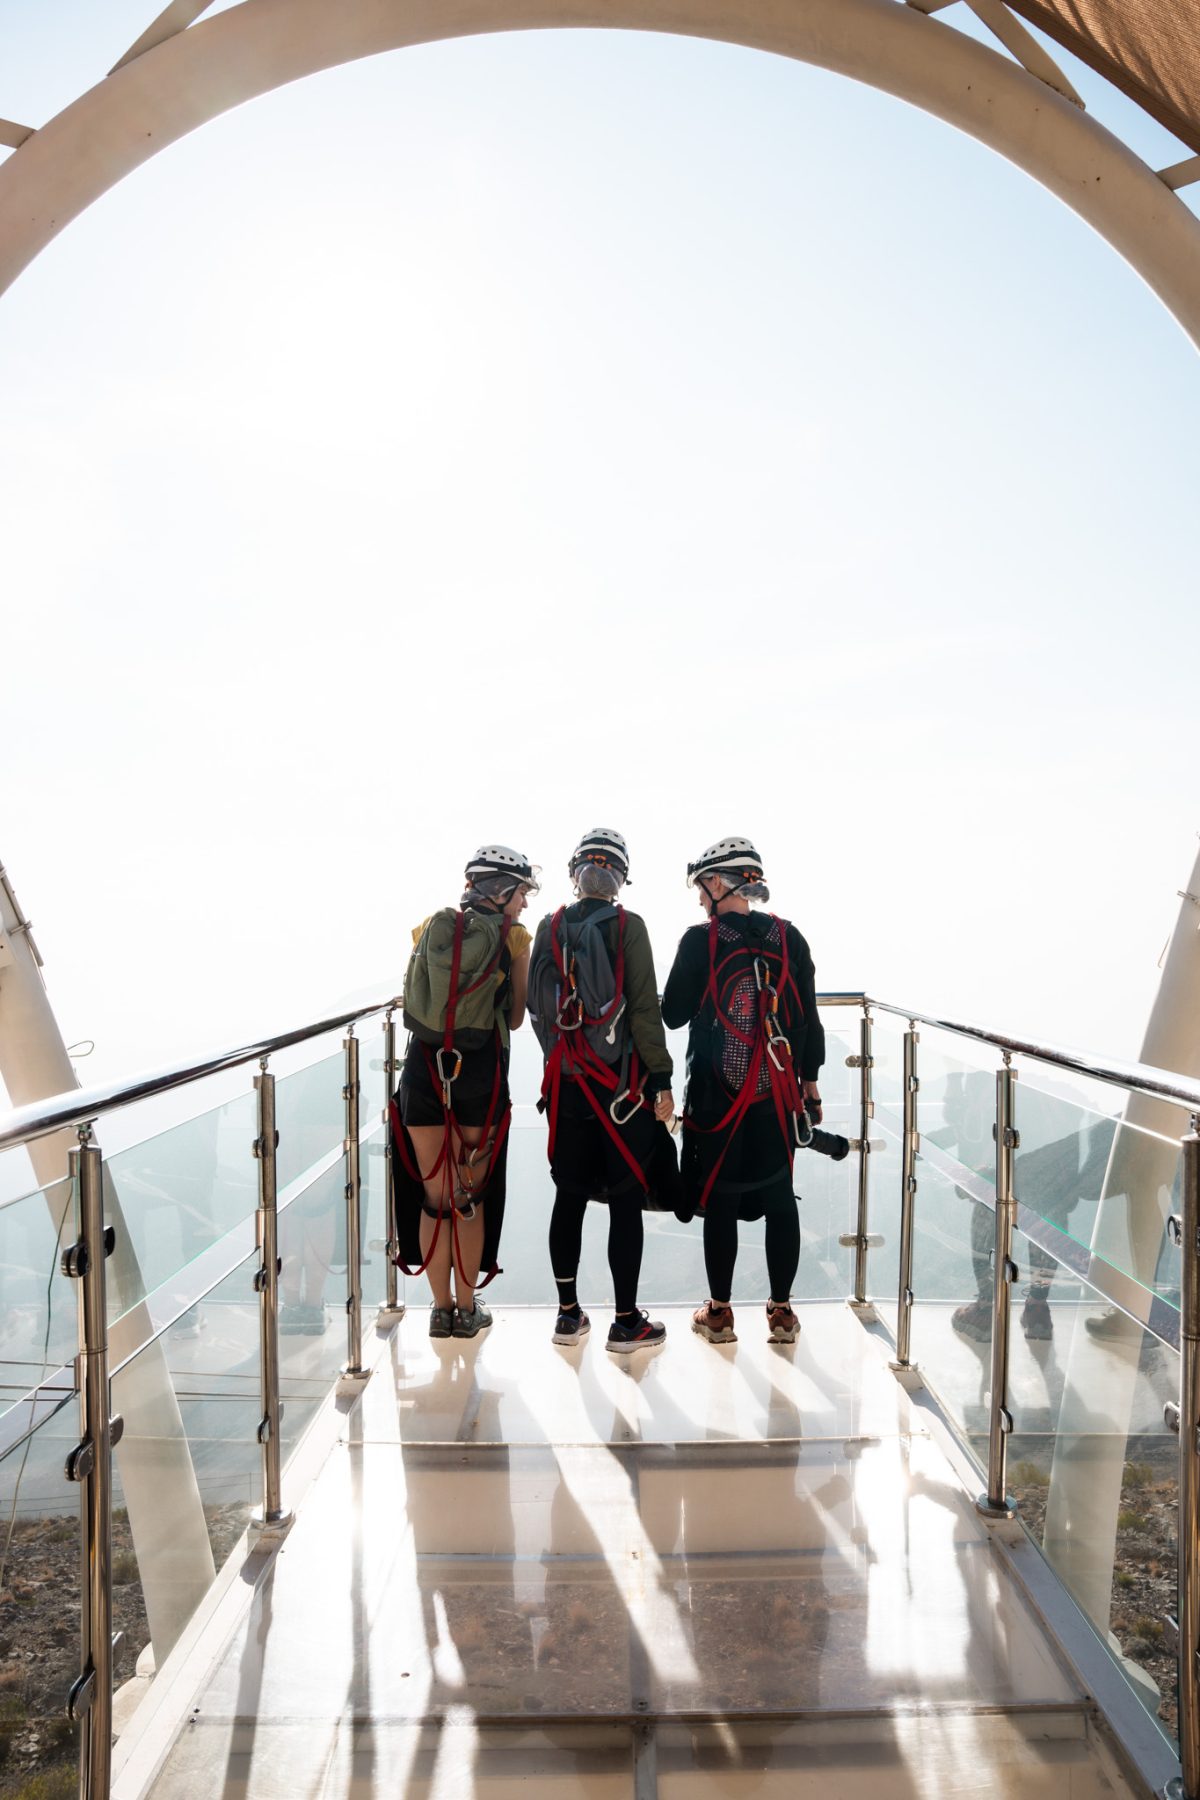 Klaar voor Jebel Flight, de langste zipline ter wereld